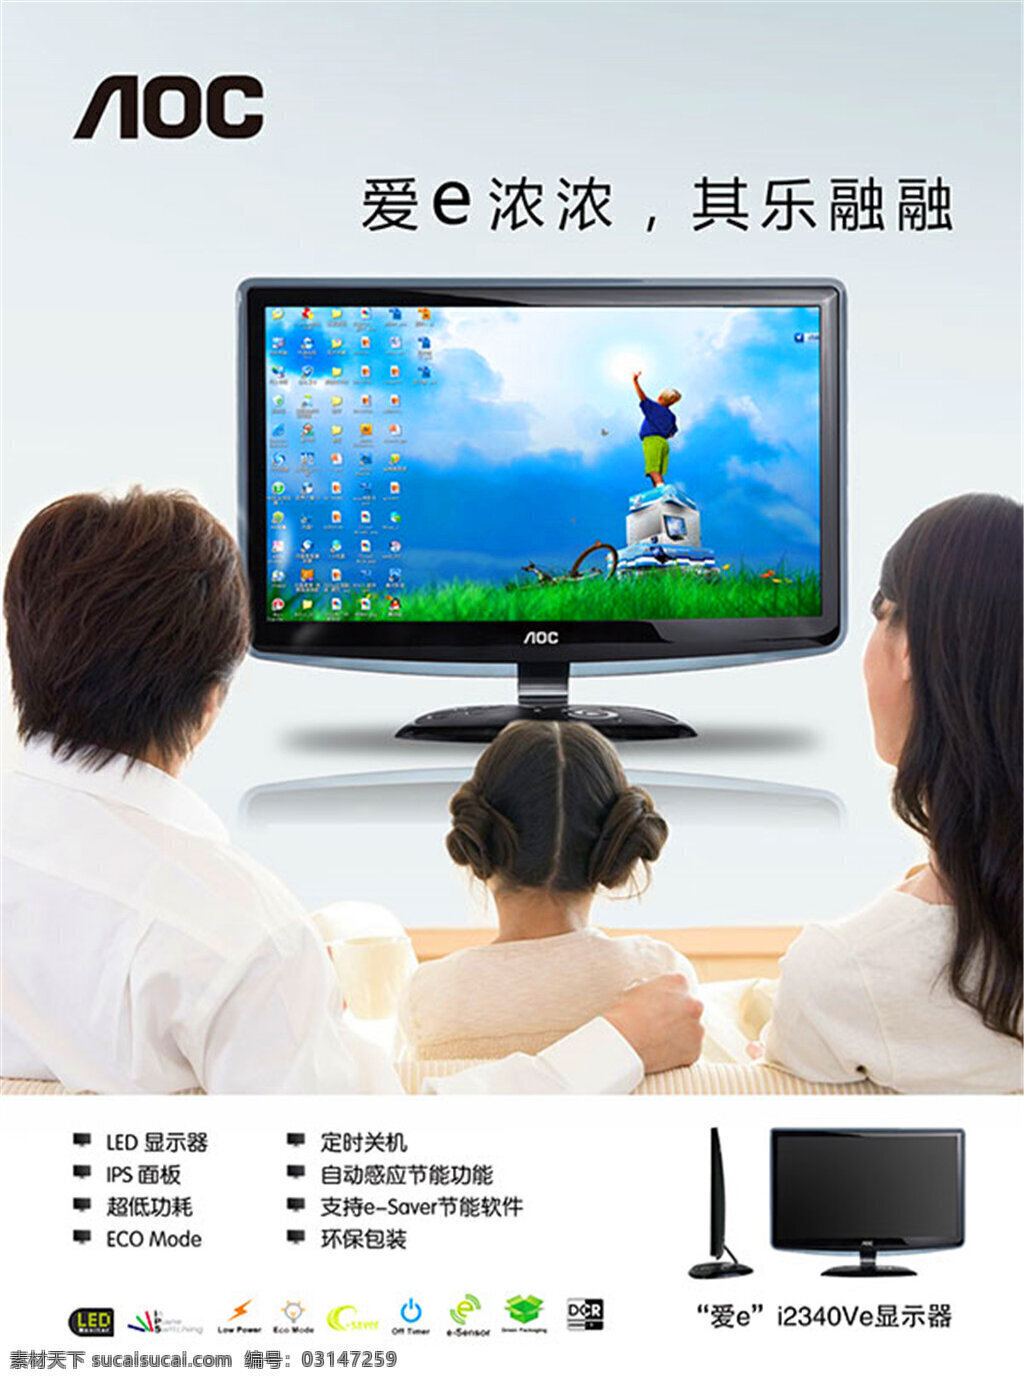 aoc 显示器 广告 海报 一家人 看电视 彩显 绿色 屏幕 环保 广告设计模板